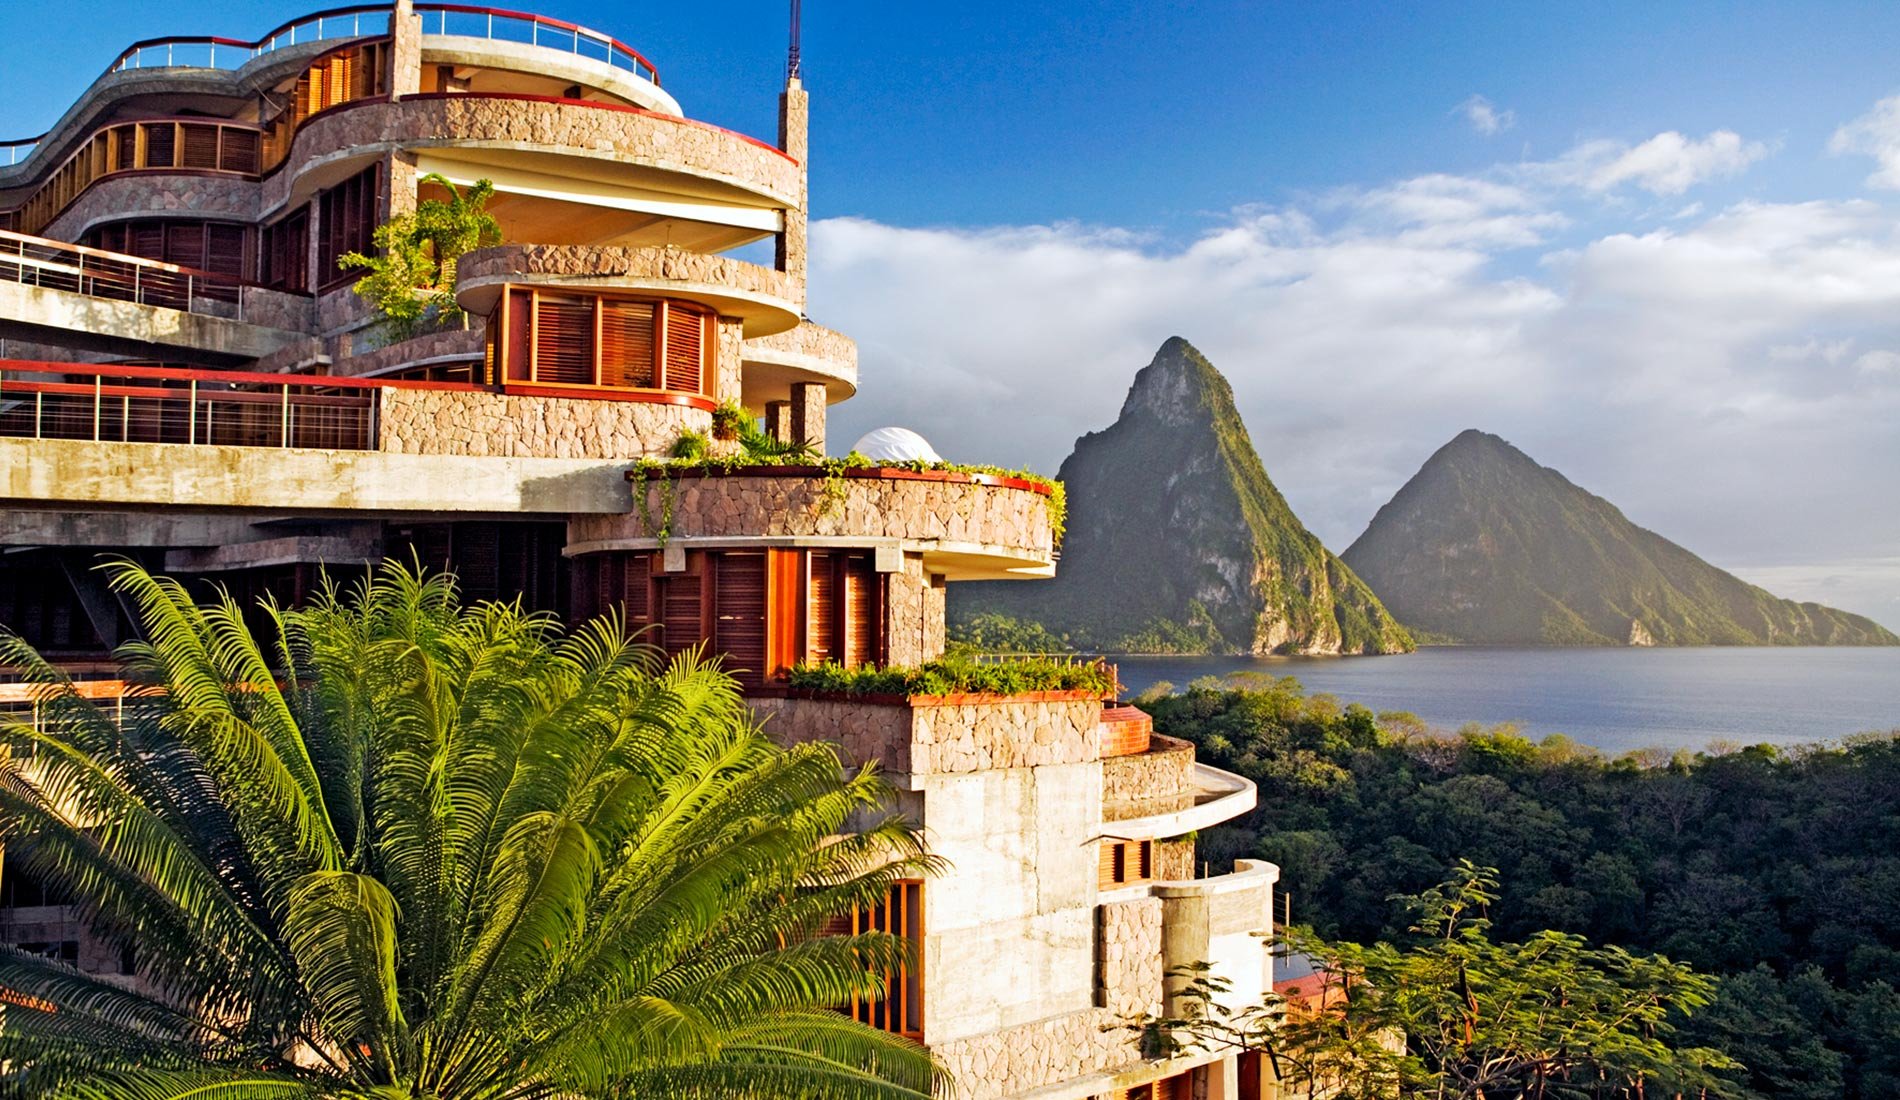 Hôtel de luxe Jade Mountain resort 5 étoiles Sainte-Lucie caraïbes vue paysage extérieur